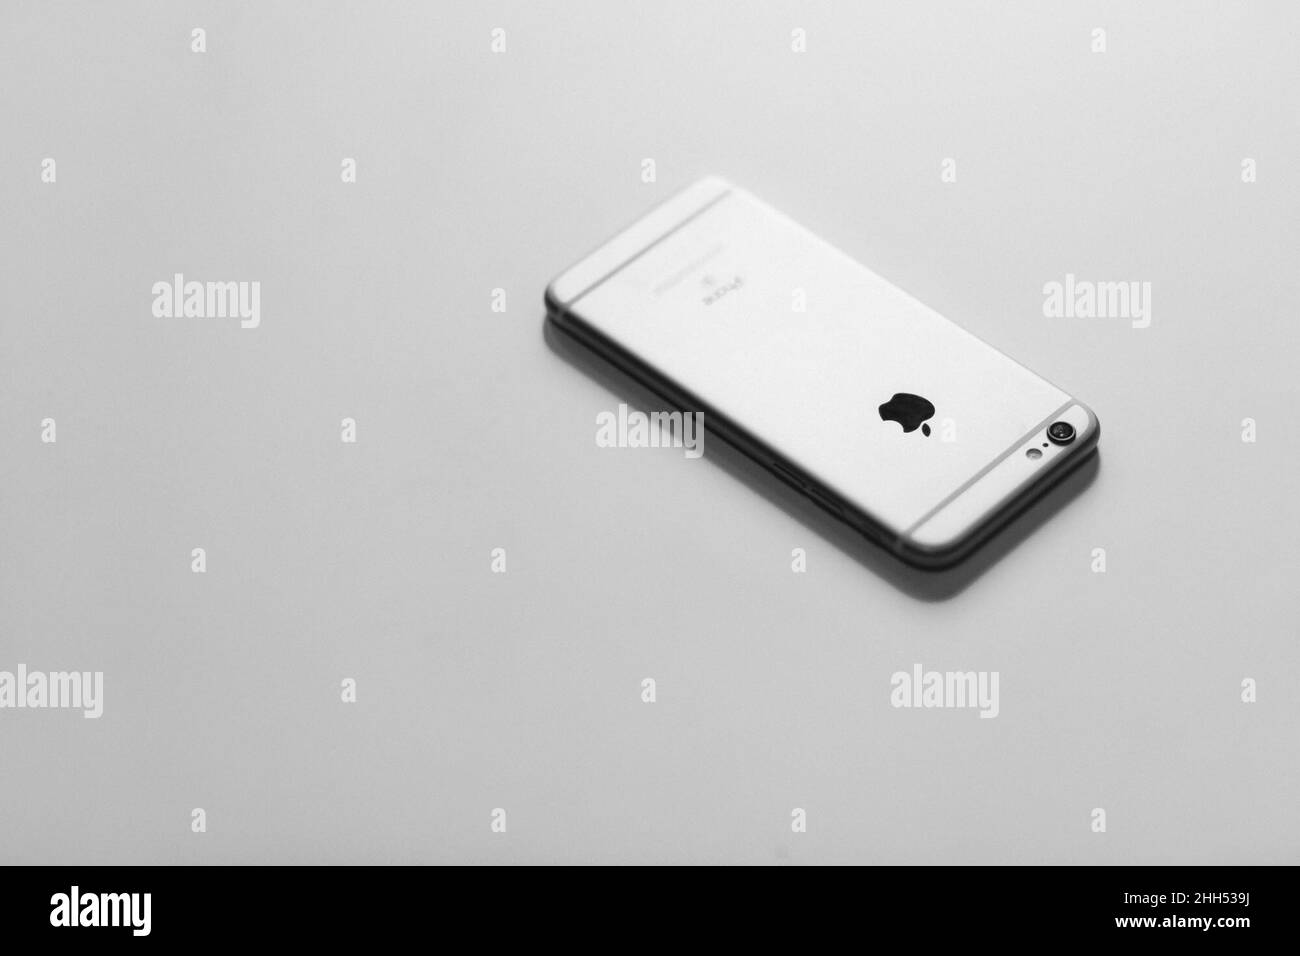 Với chiếc điện thoại iPhone bạc cổ điển và nền trắng tinh khiết, bạn sẽ phát hiện ra một thiết kế đơn giản nhưng sang trọng. Bấm vào hình ảnh để xem chi tiết và trải nghiệm điện thoại iPhone độc đáo của riêng bạn.